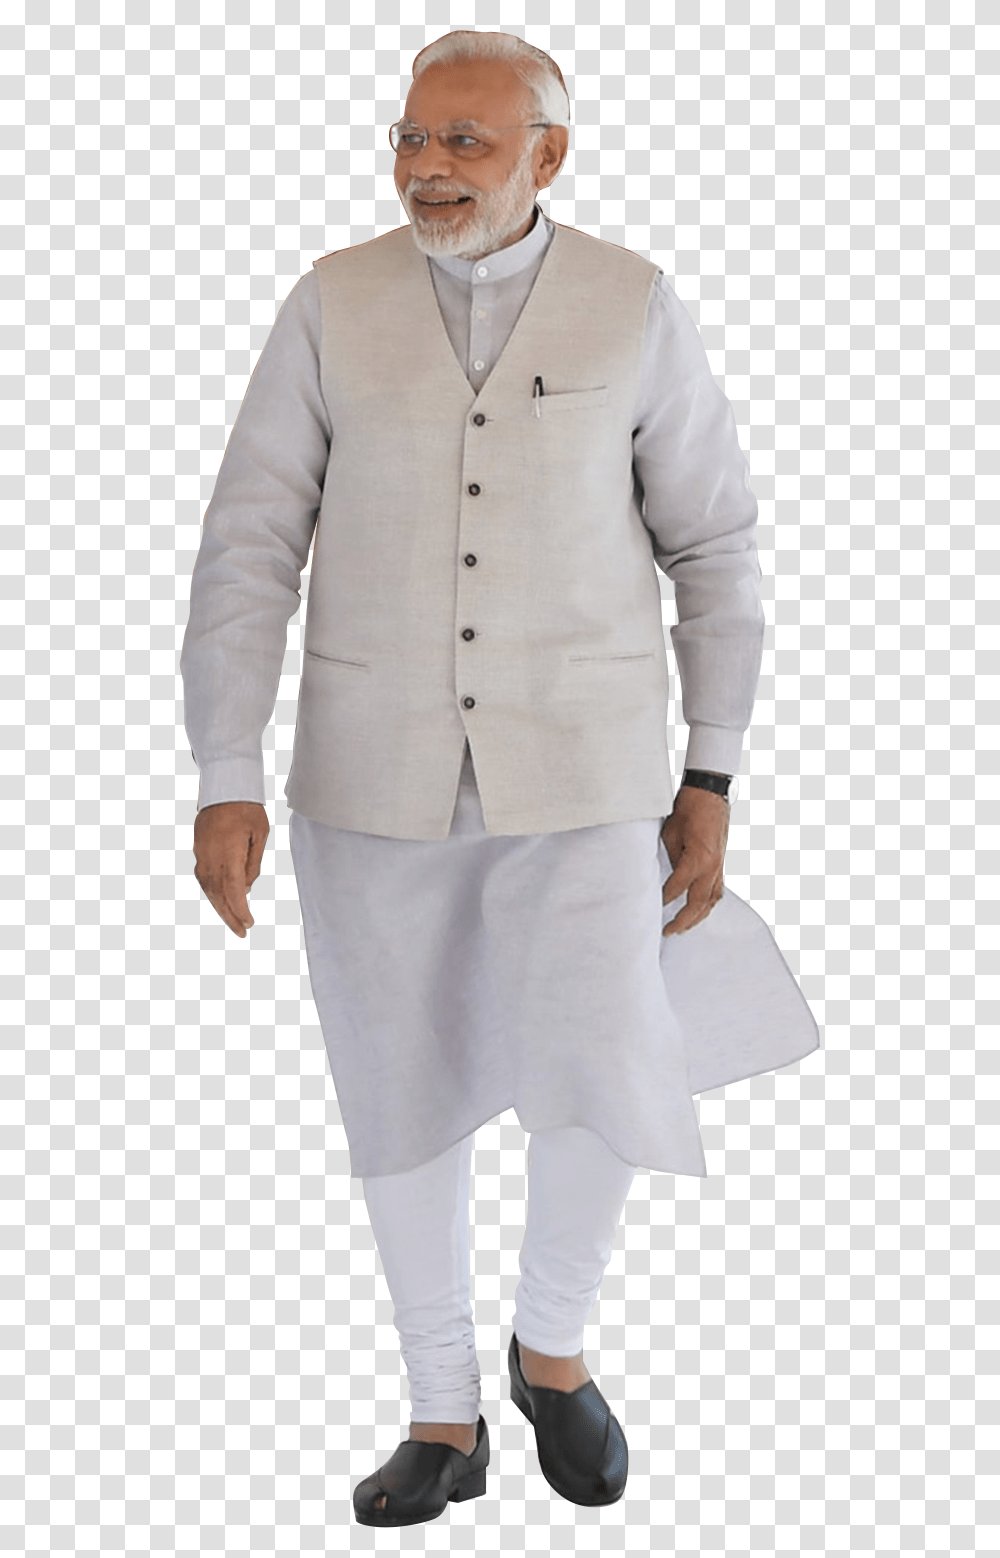 Narendra Modi Full Photo Modi Full Image Hd, Person, Shirt, Blazer Transparent Png